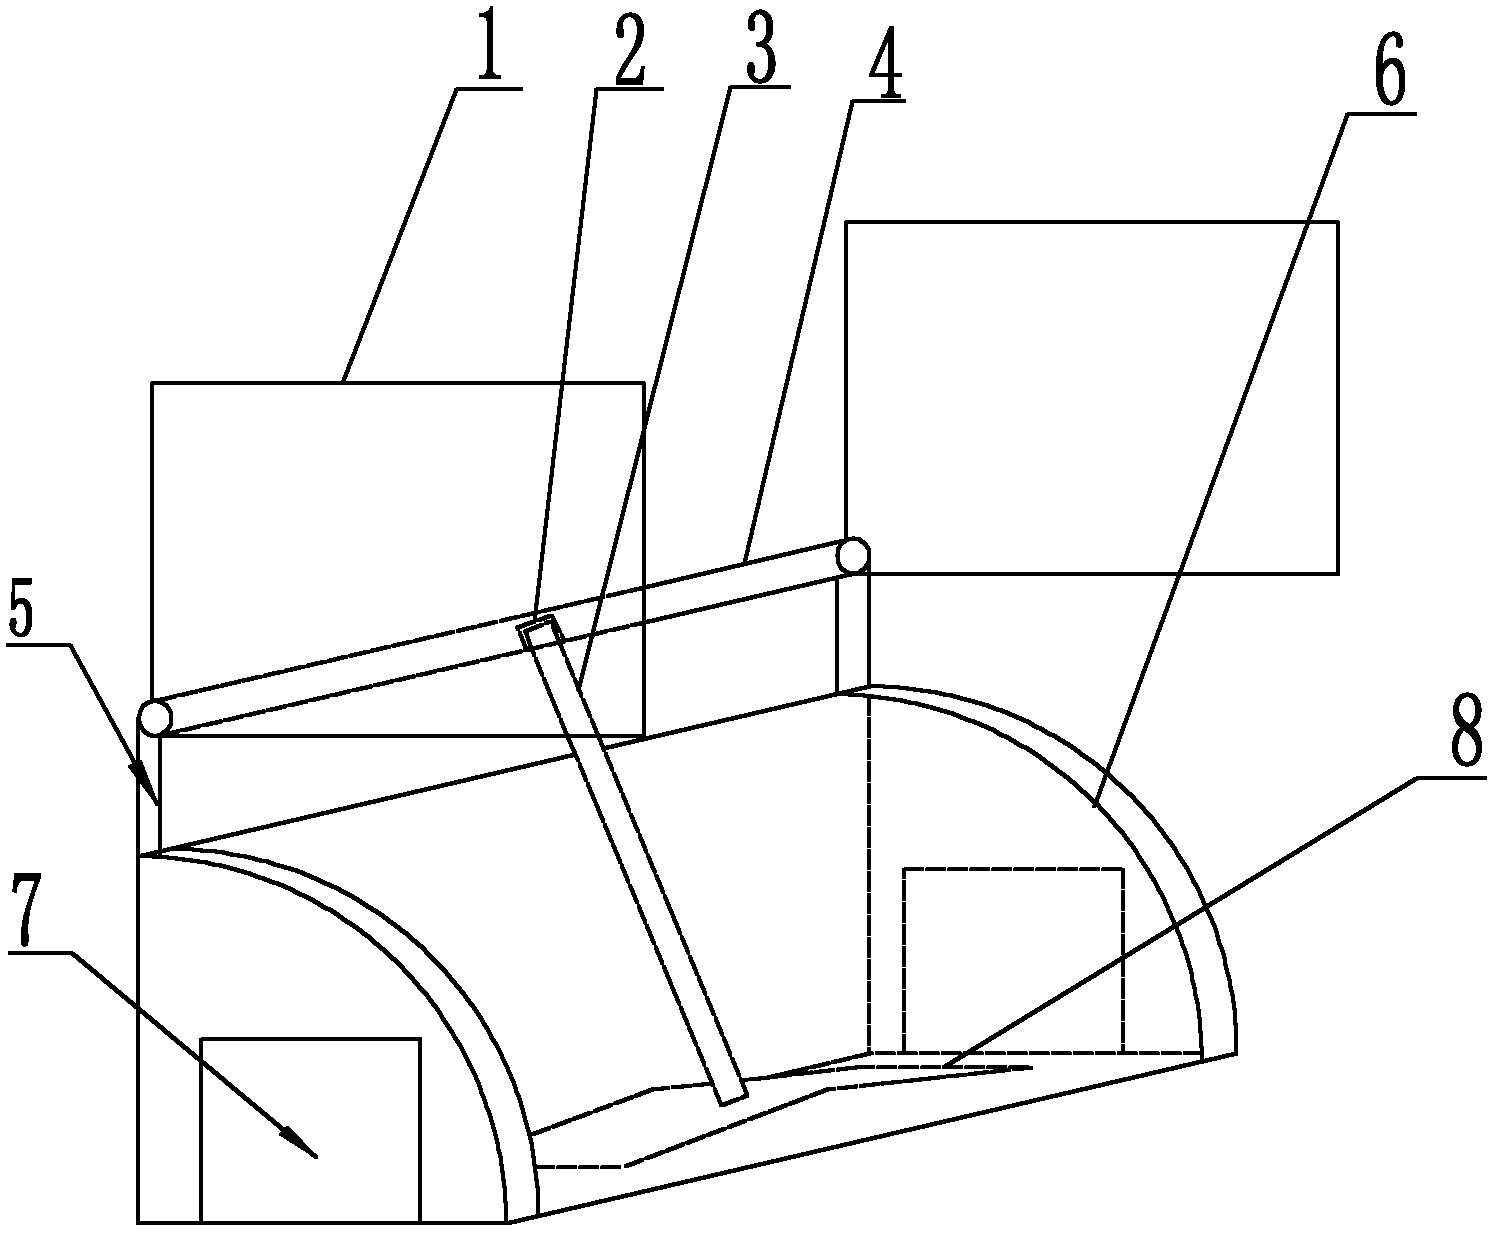 Dual-door mousetrap